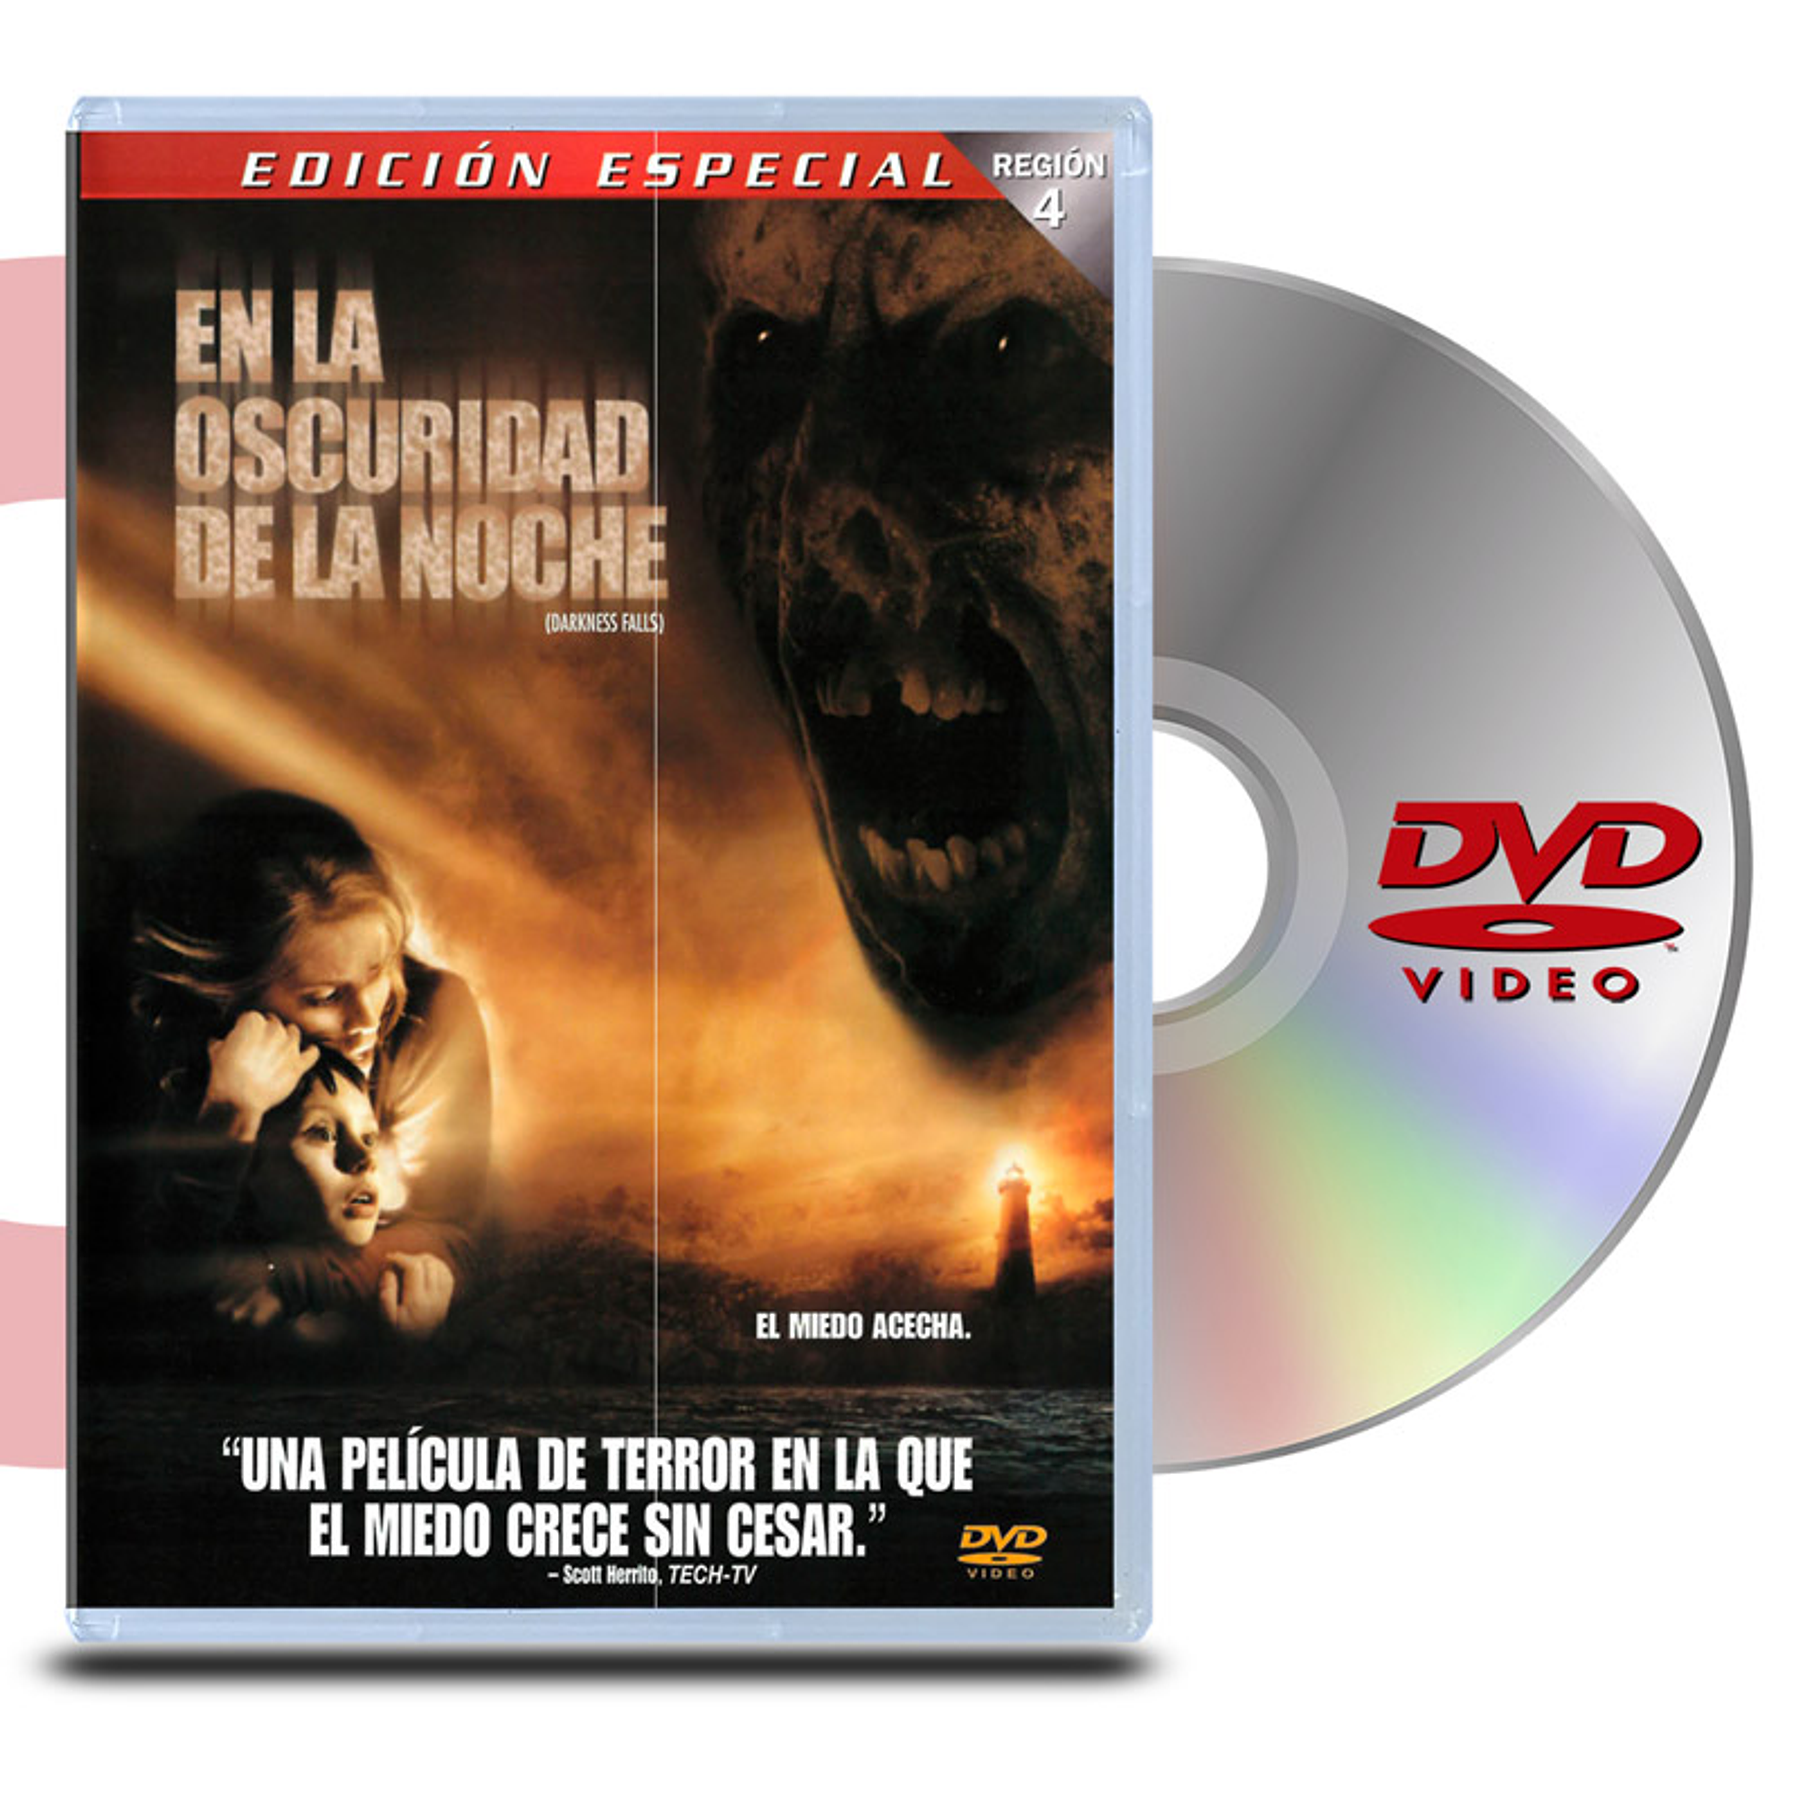 DVD EN LA OSCURIDAD DE LA NOCHE